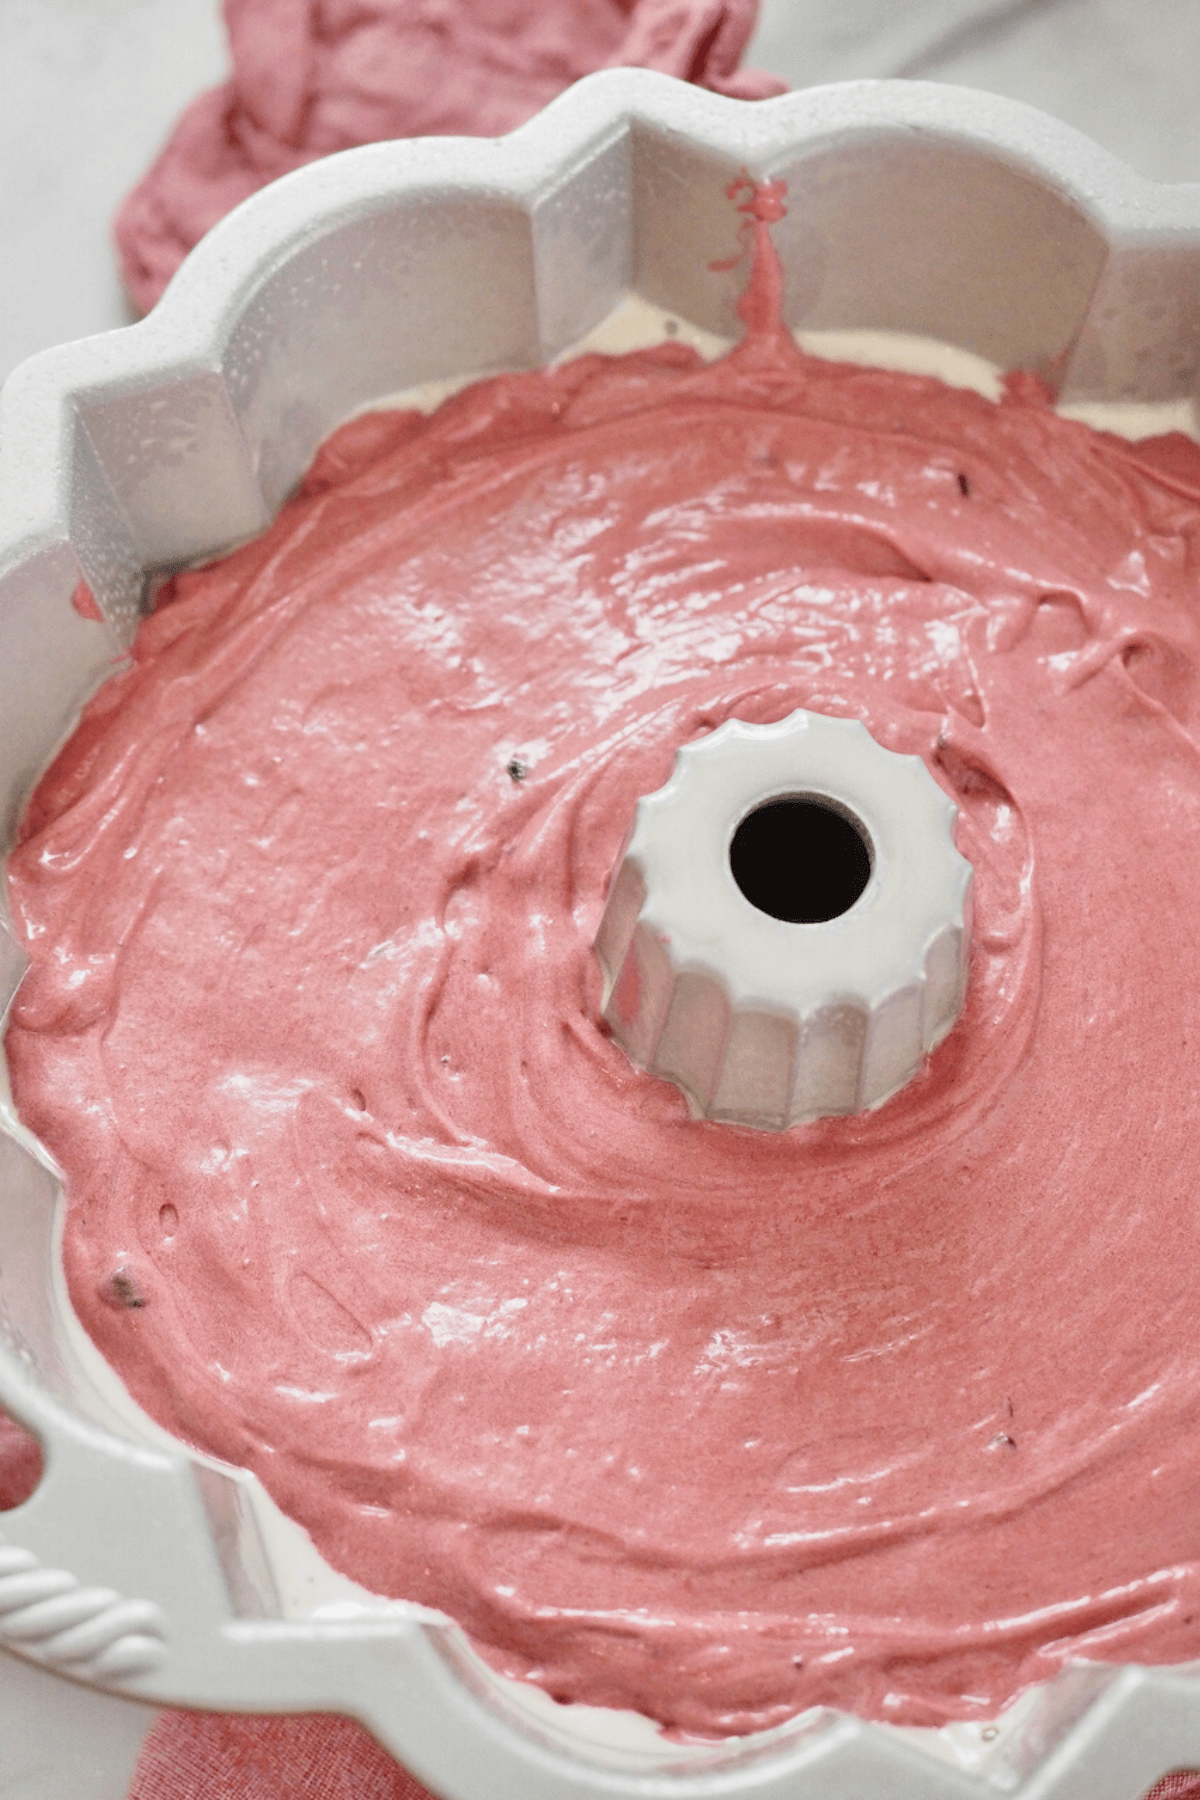 Smoothed red velvet cake batter in bundt pan. 